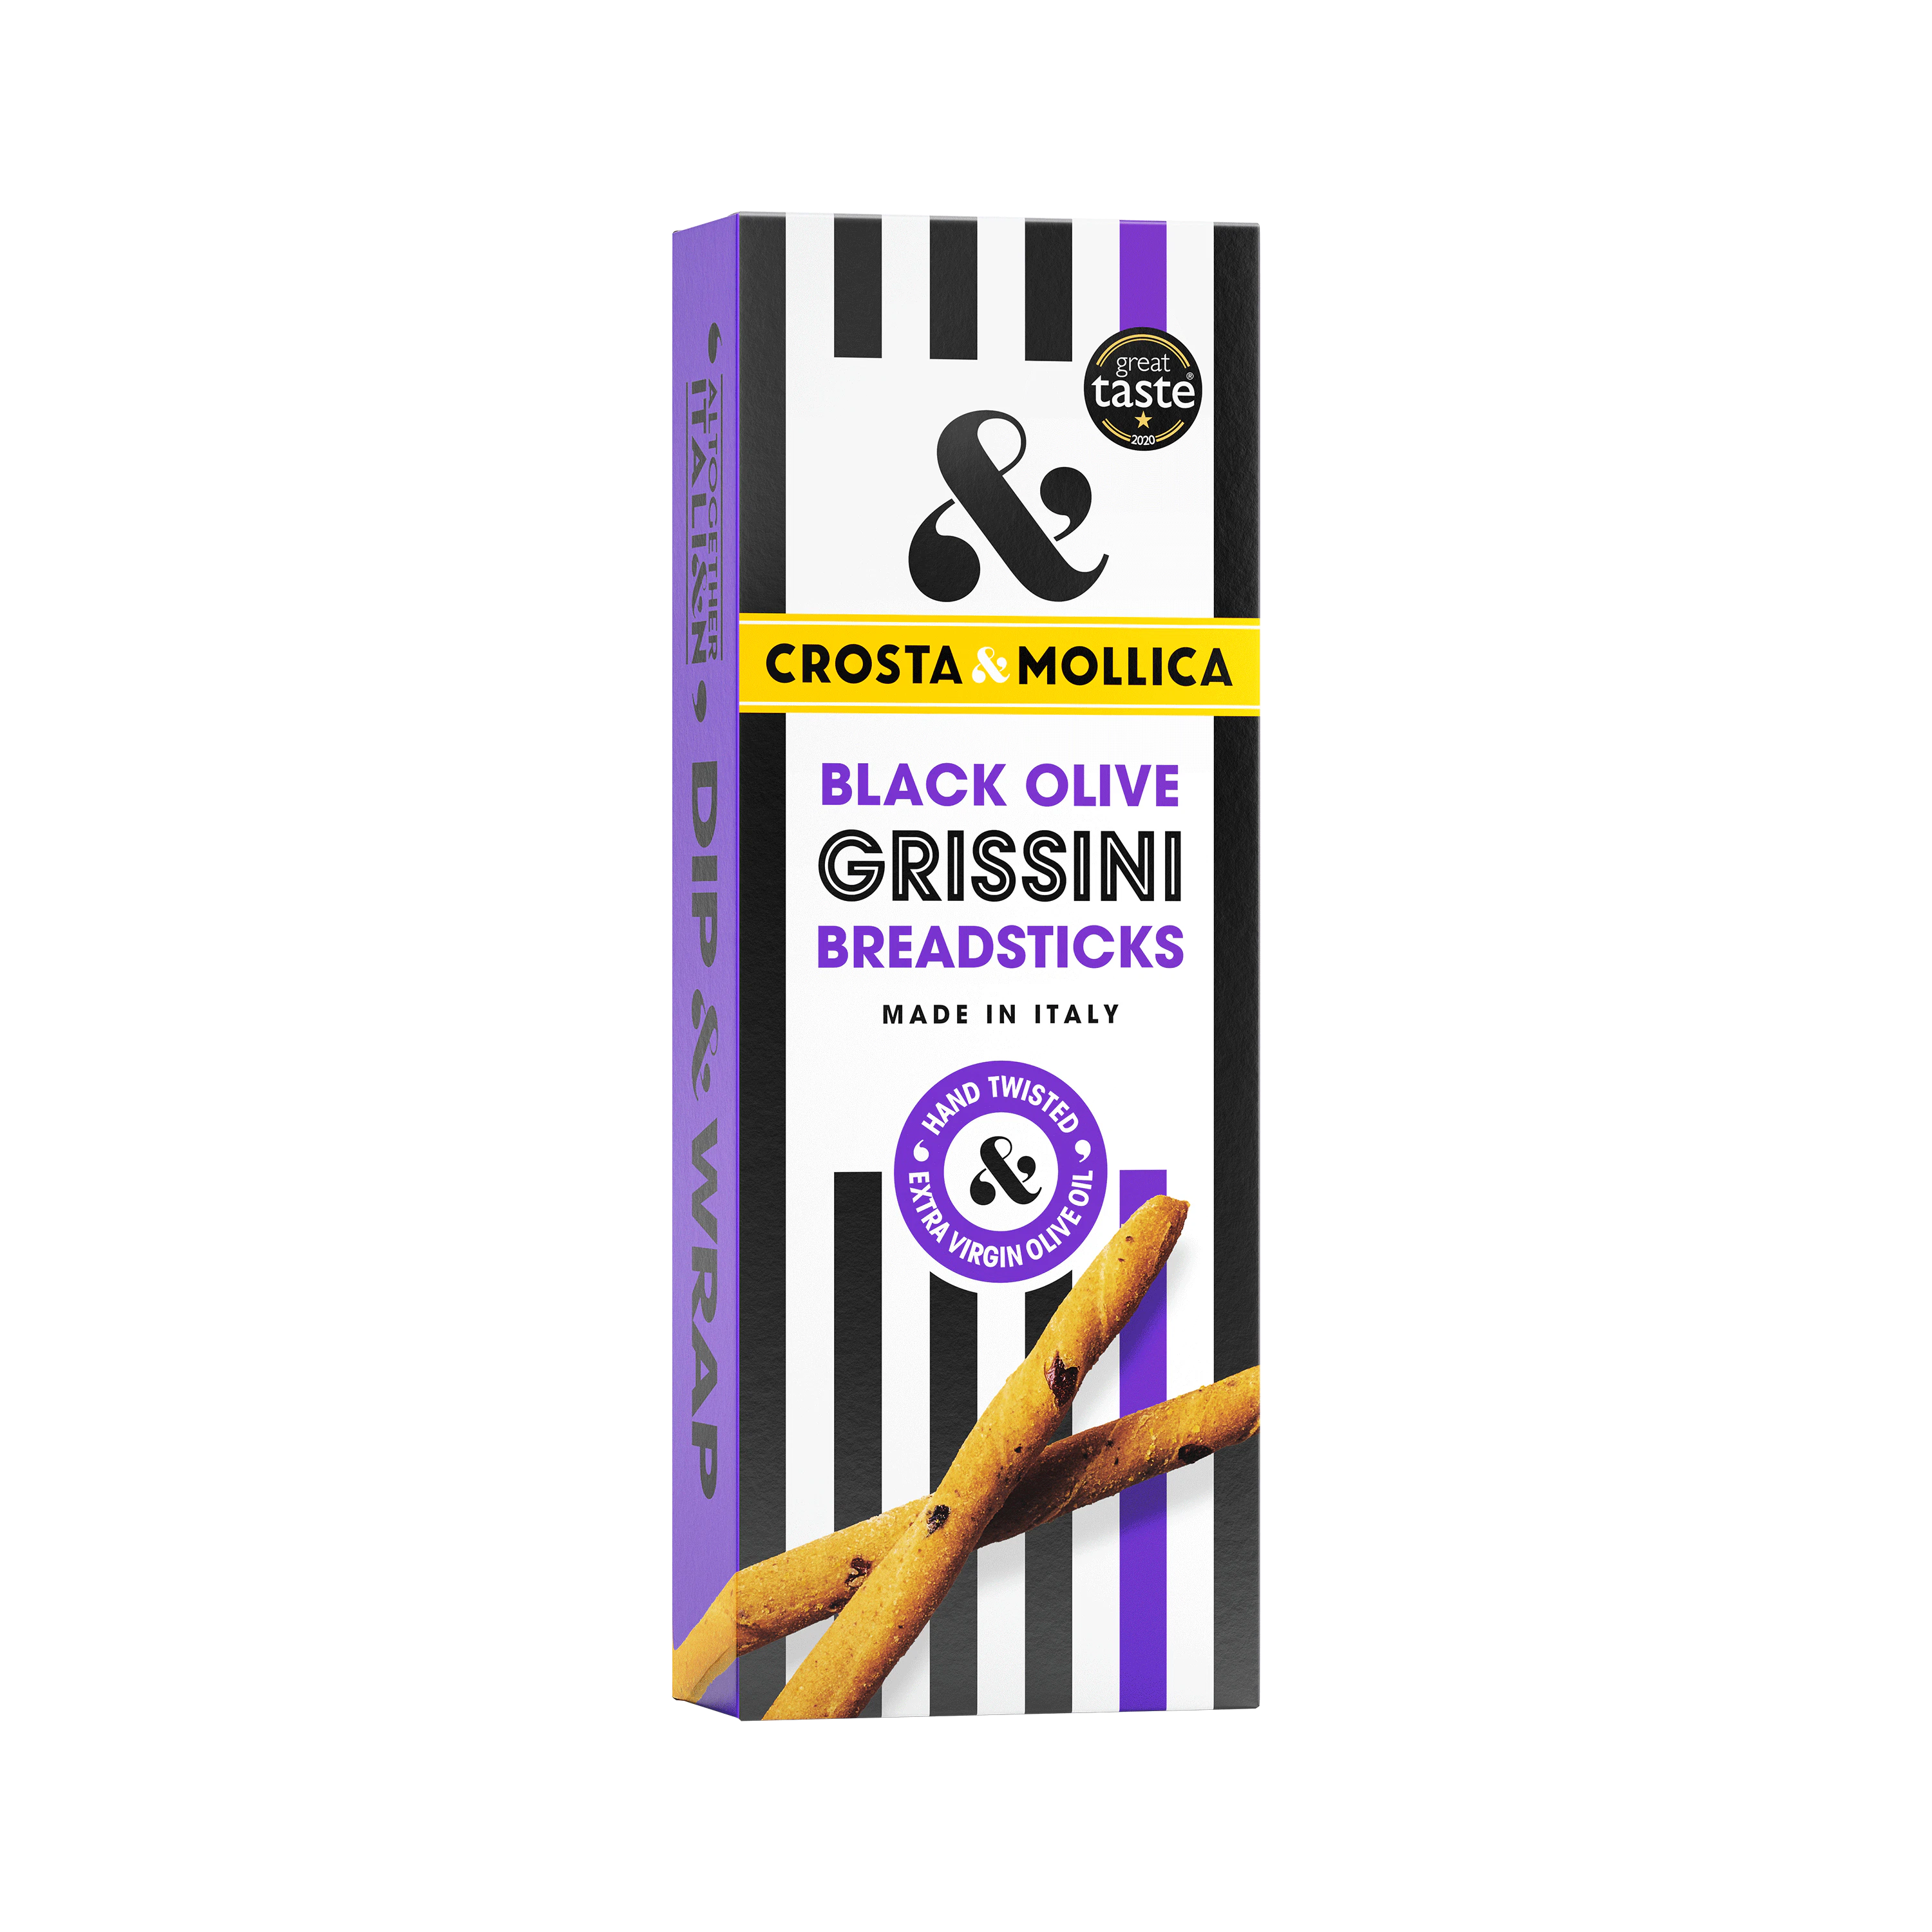 Black olive Grissini packaging.